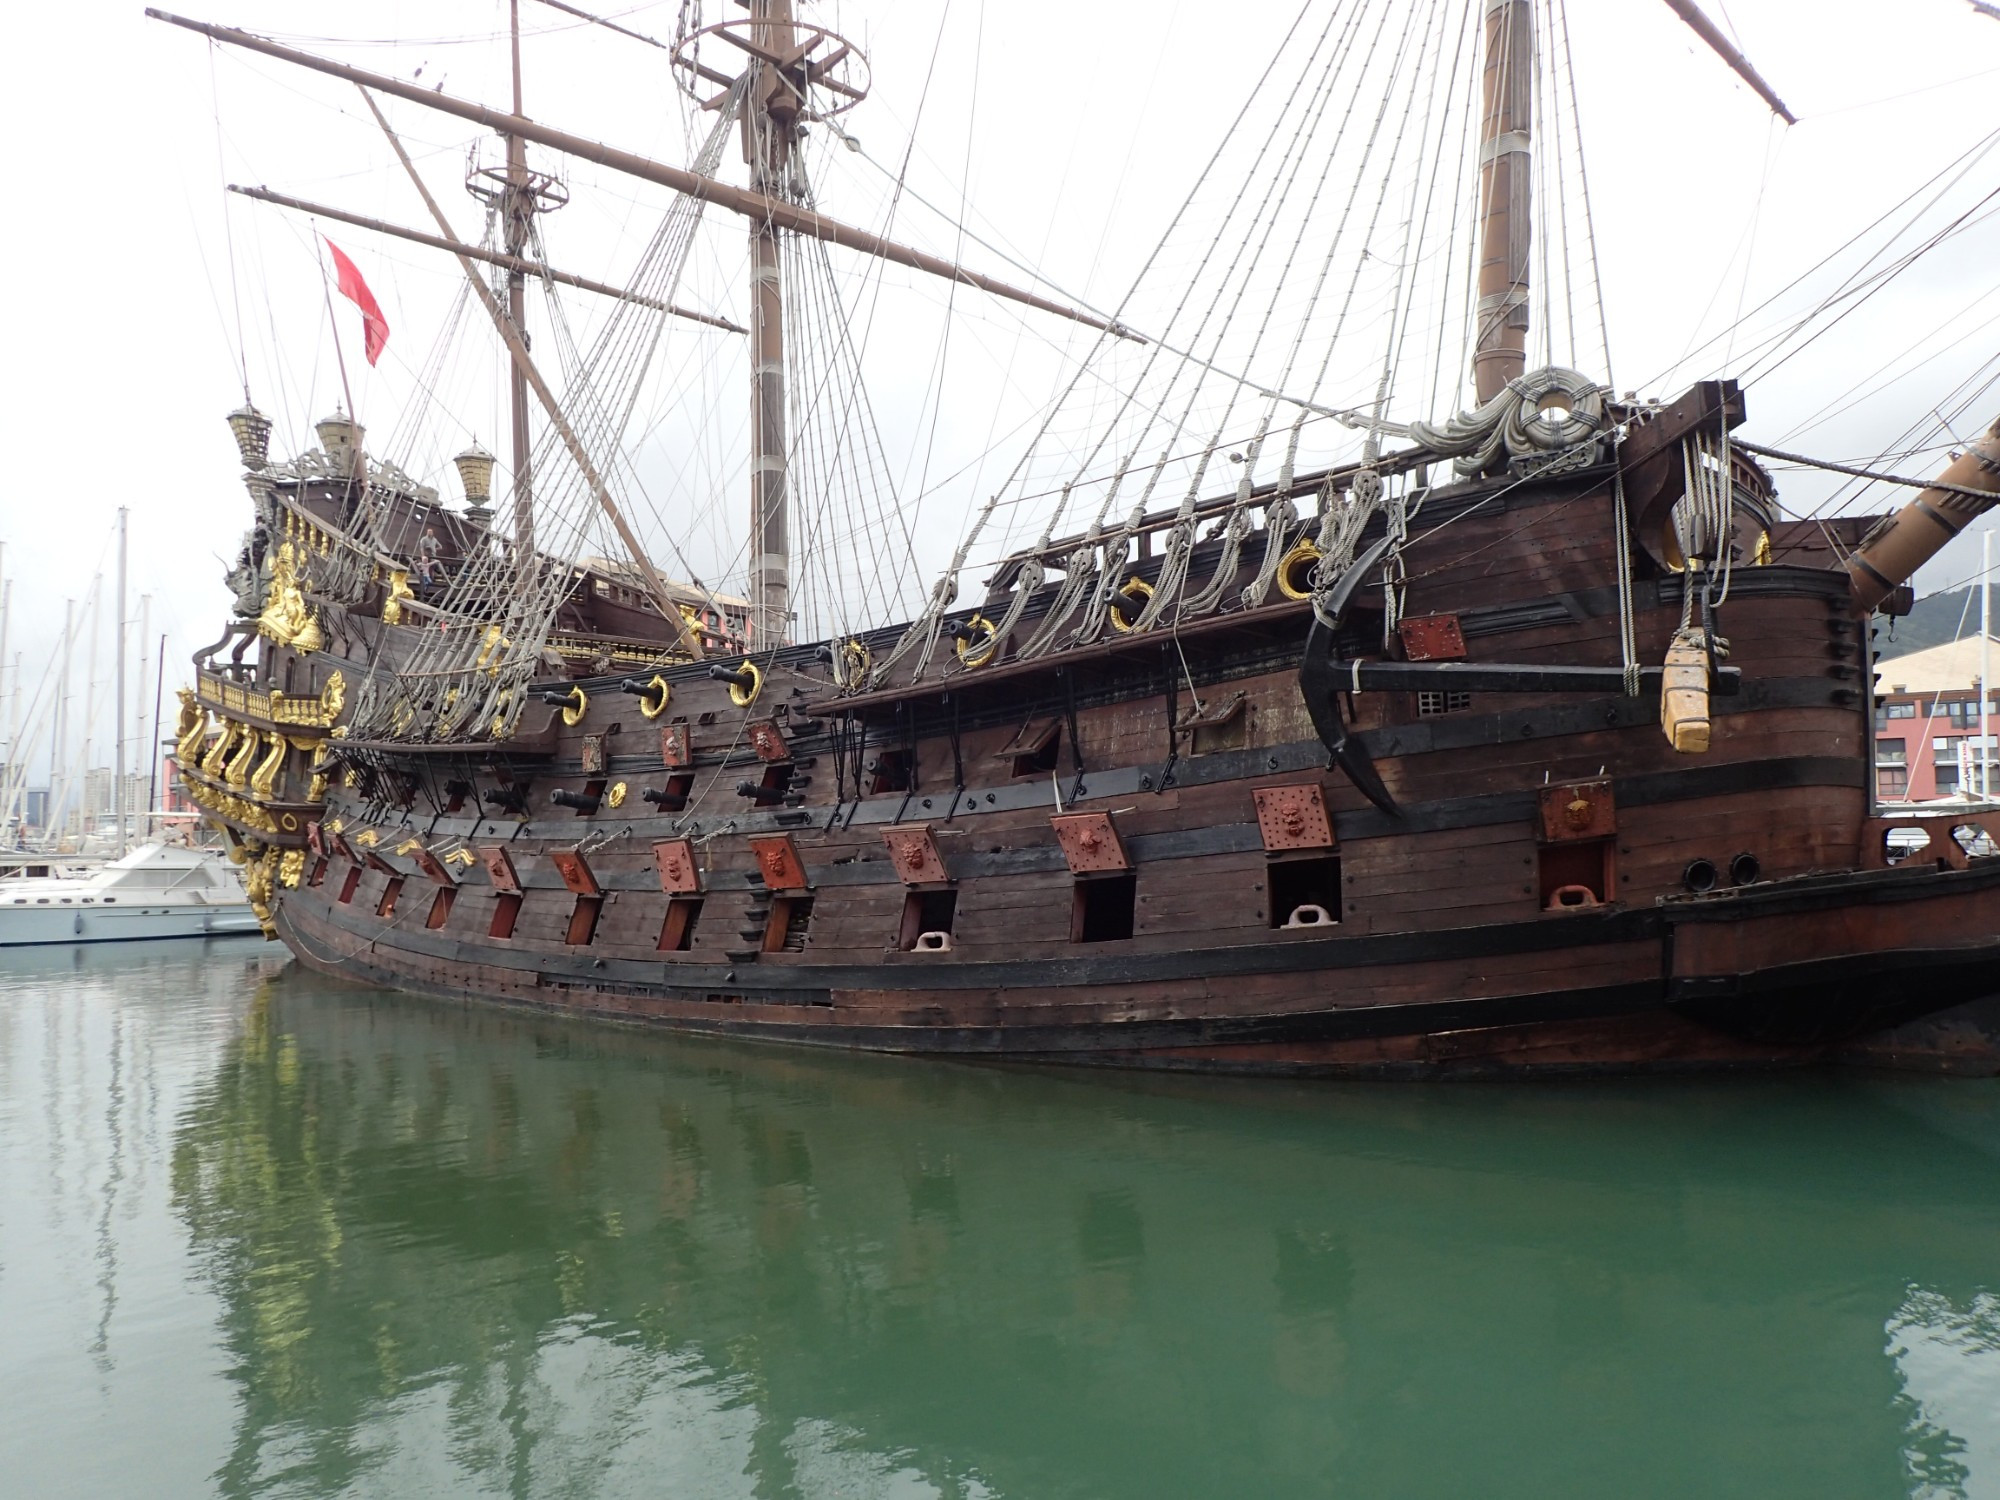 Spanish Galleon 1600 Vascello Neptune, Италия